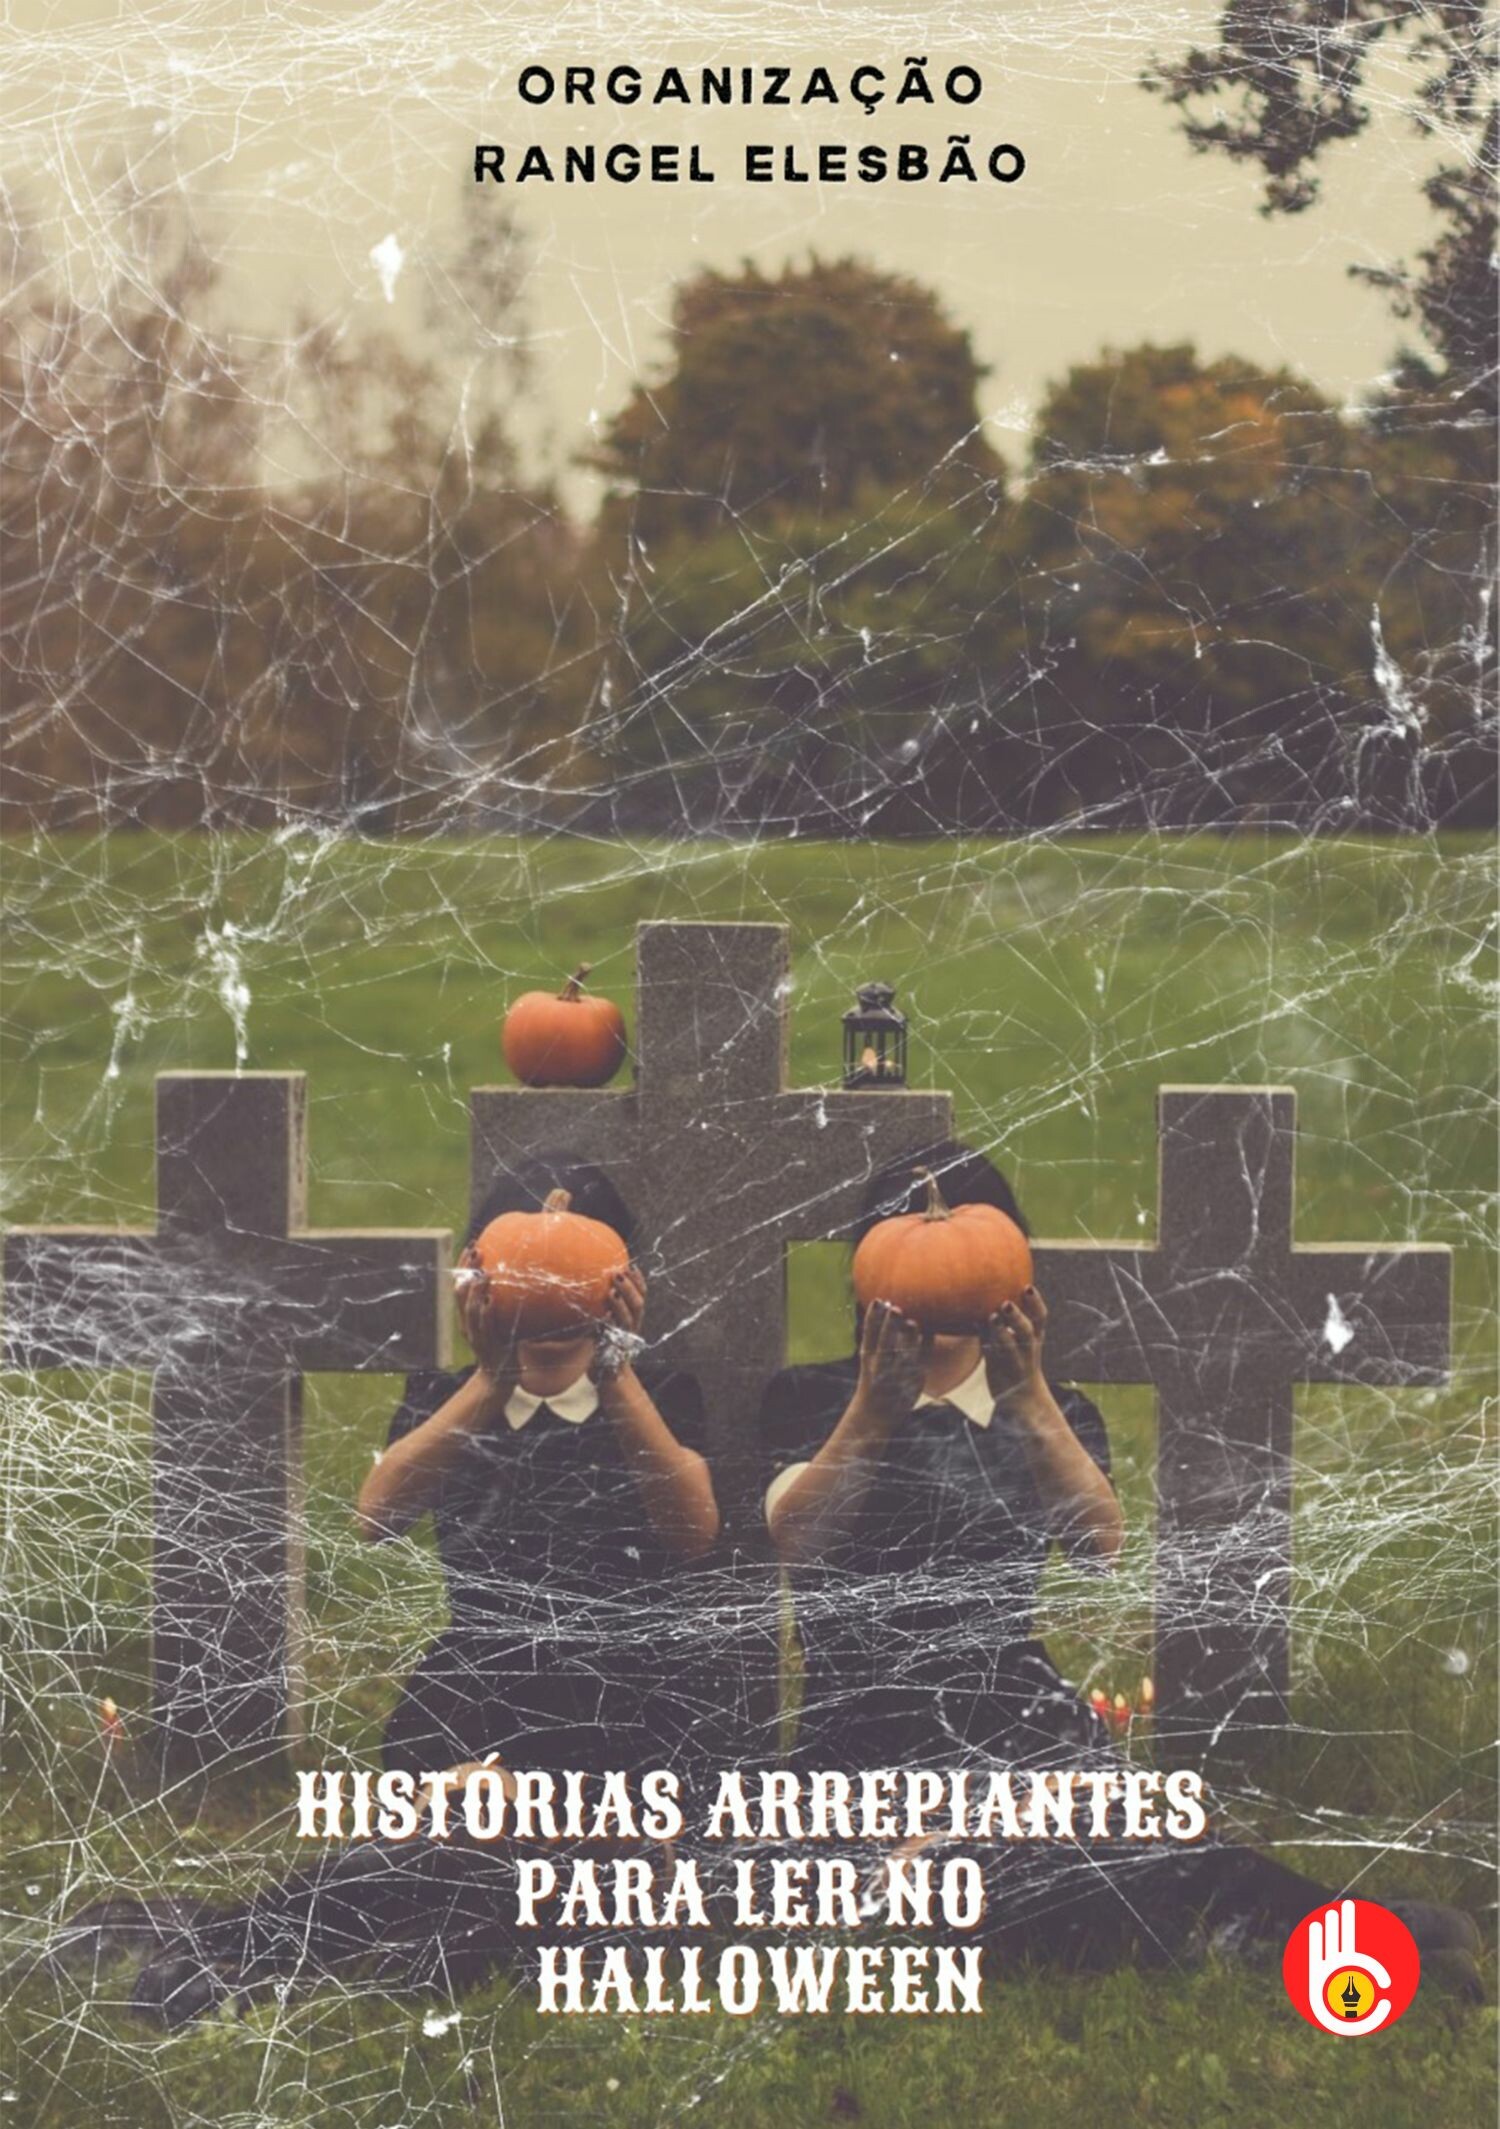 Histórias Arrepiantes para contar no Halloween